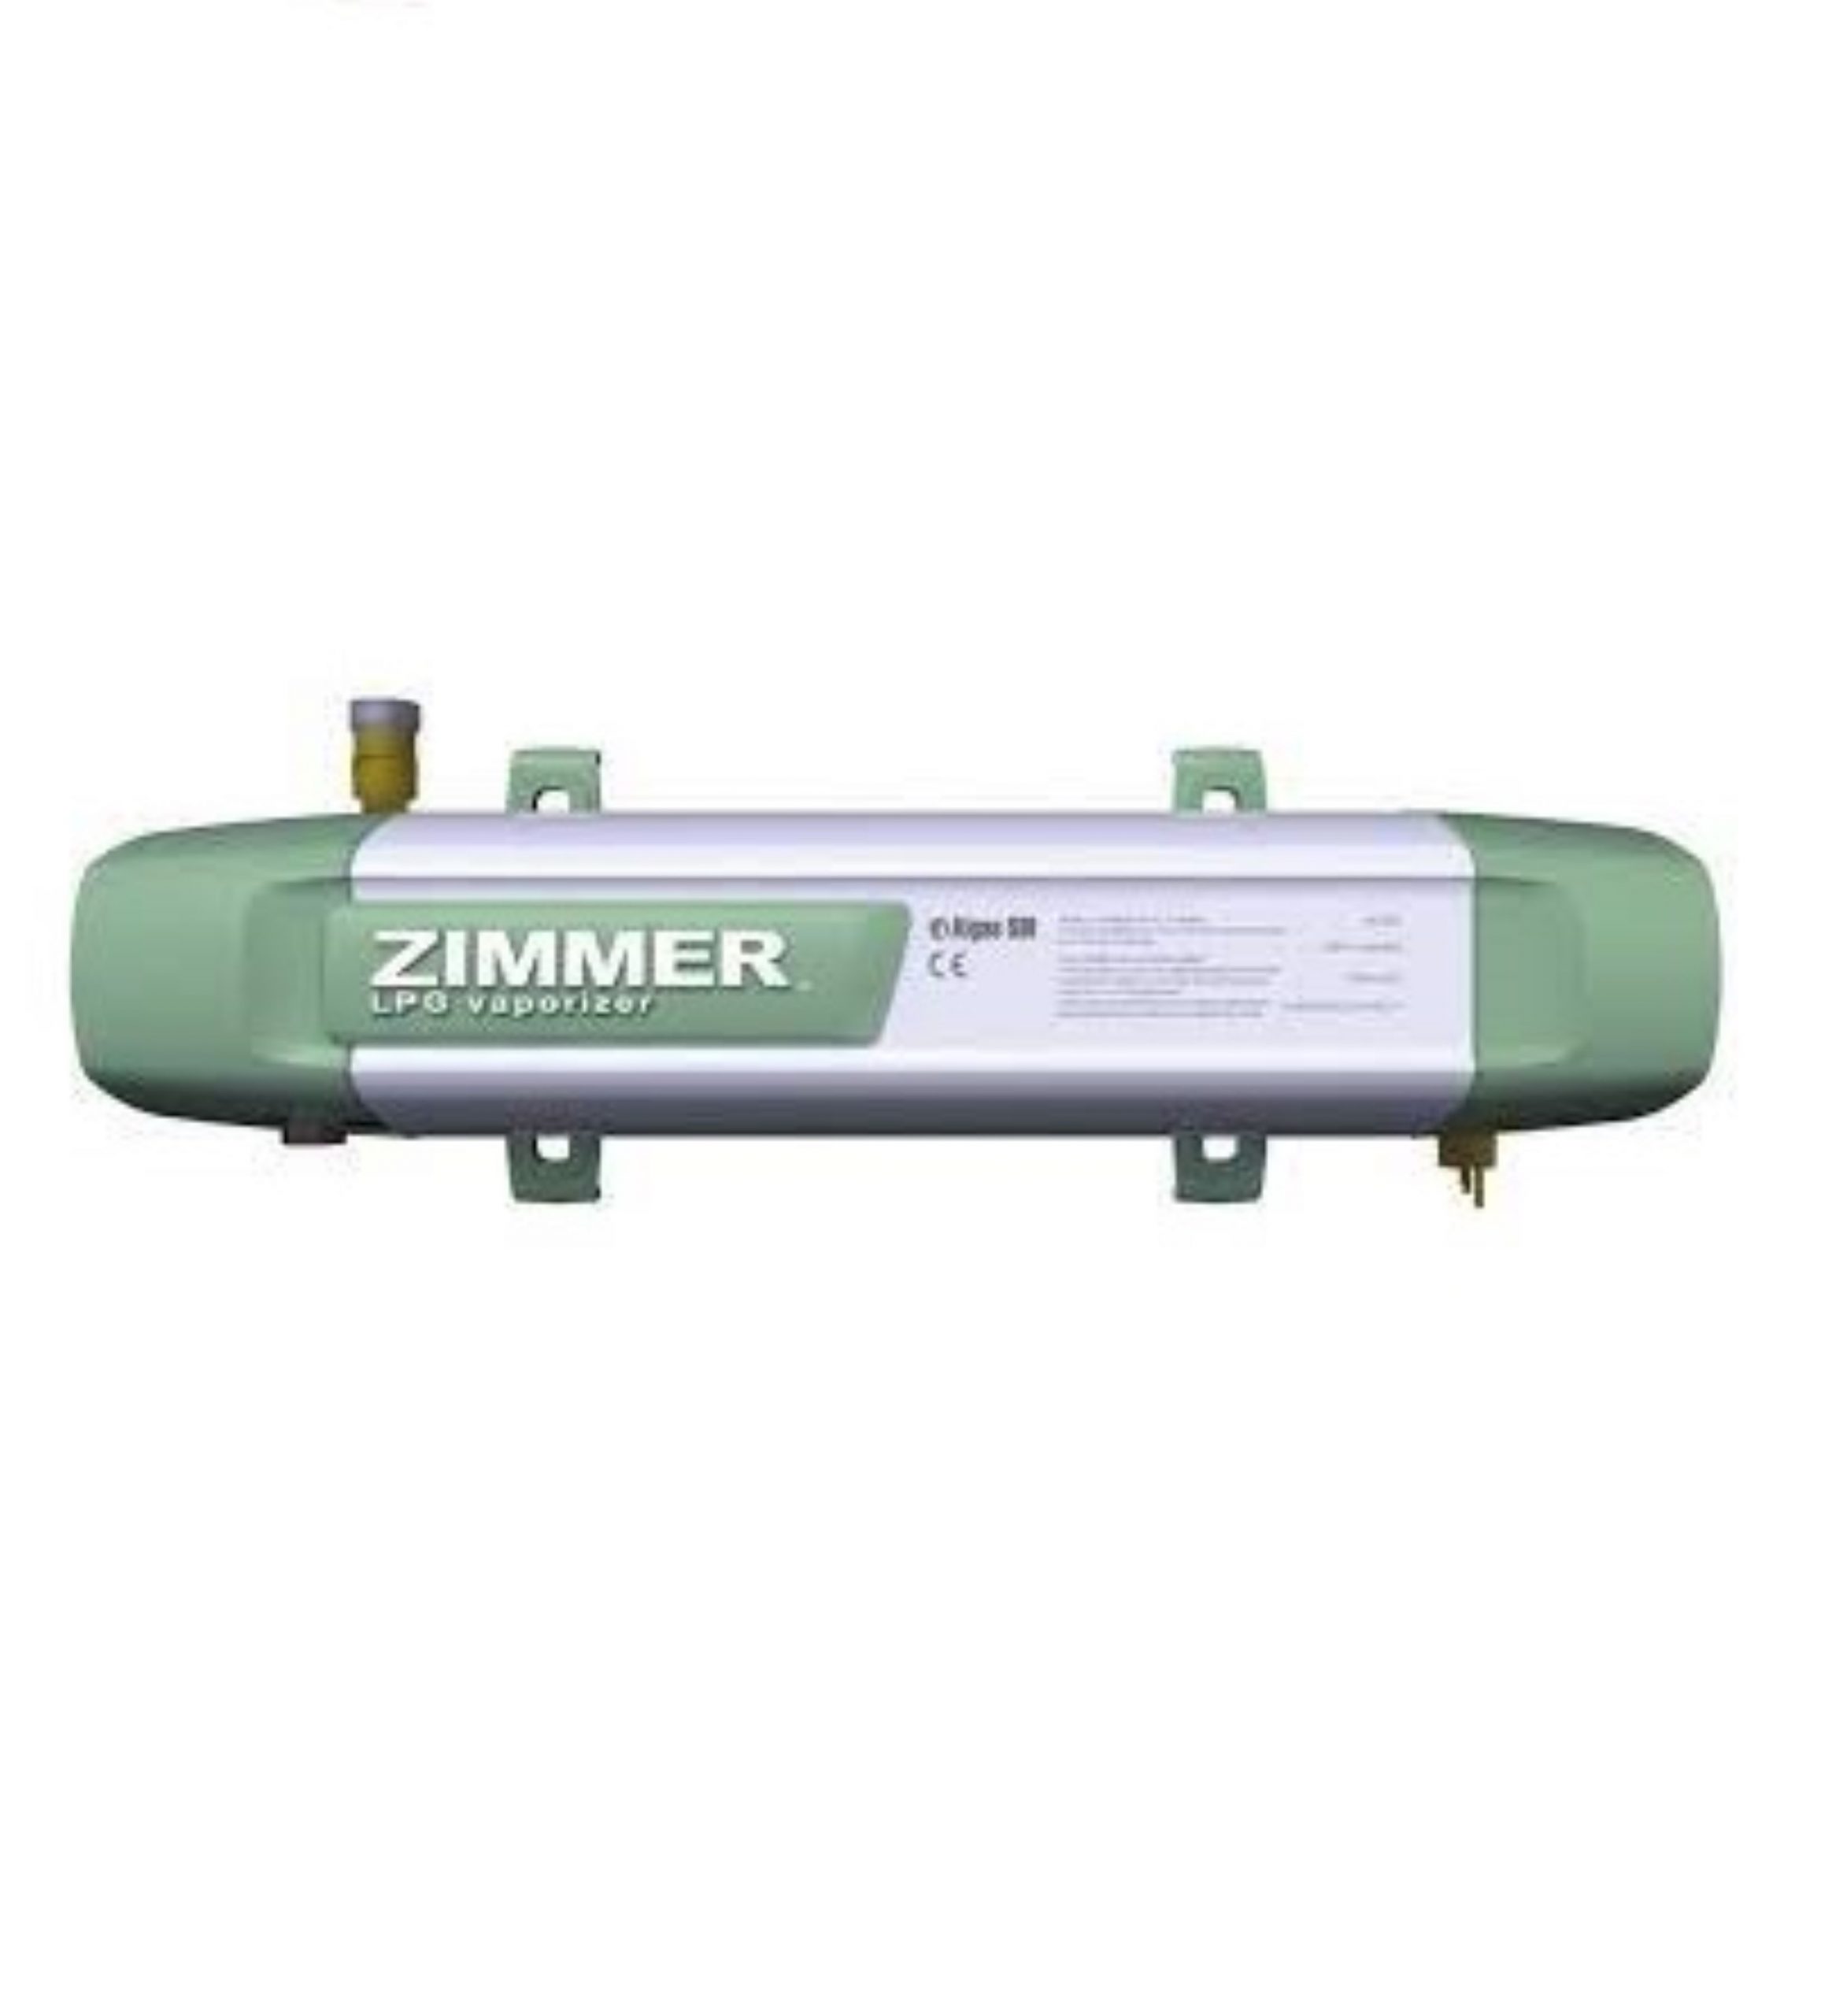 ZIMMER LPG VAPORIZER  40 KG/HR ,  100-240V, SINGLE PHASE, Z40 in UAE